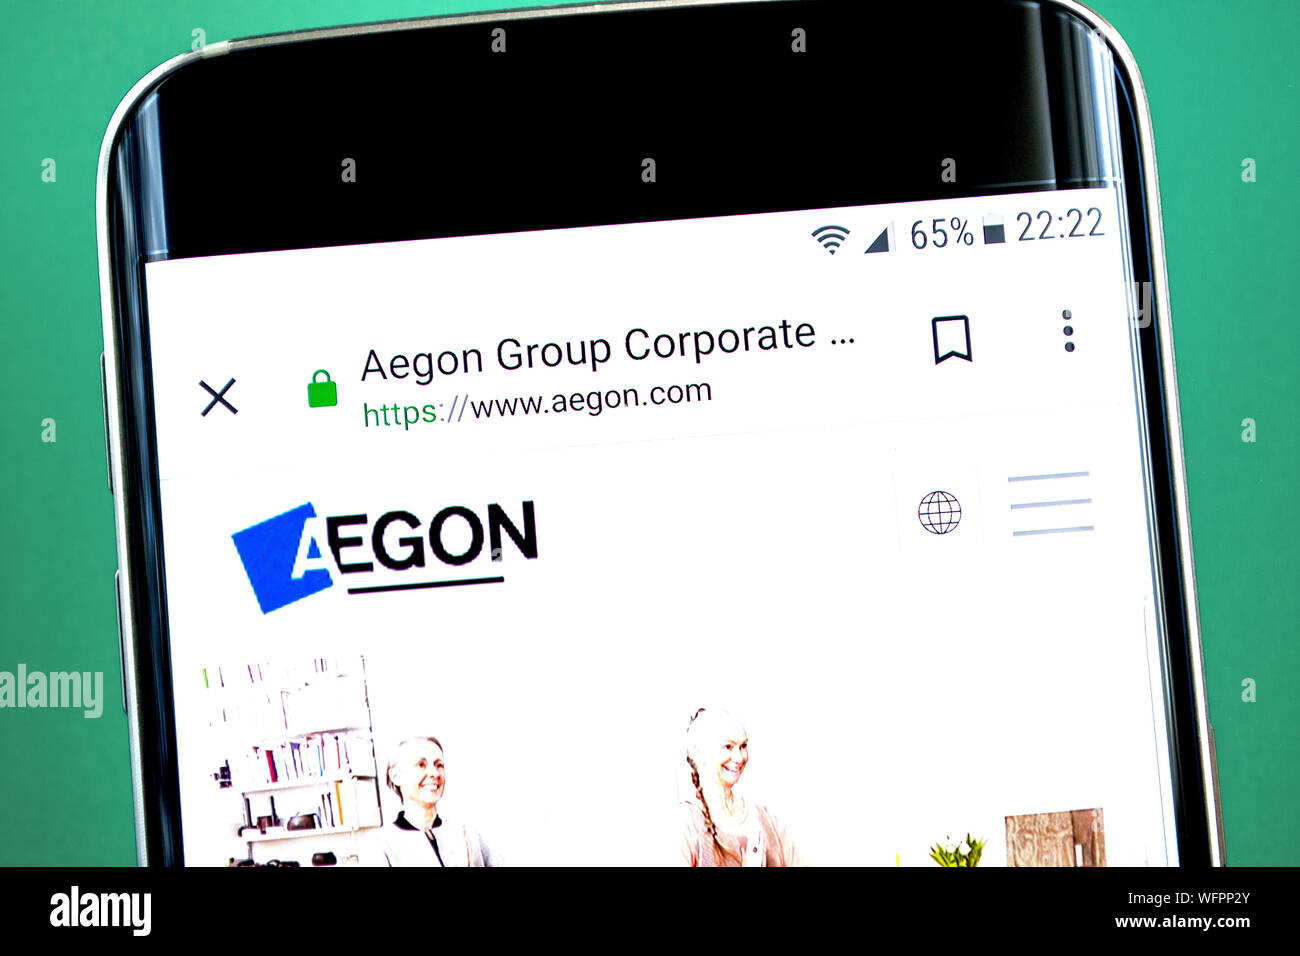 Berdiansk, Ukraine - 1 juillet 2019 : rédaction d'illustration d'Aegon accueil du site. Logo Aegon visible sur l'écran du téléphone. Banque D'Images